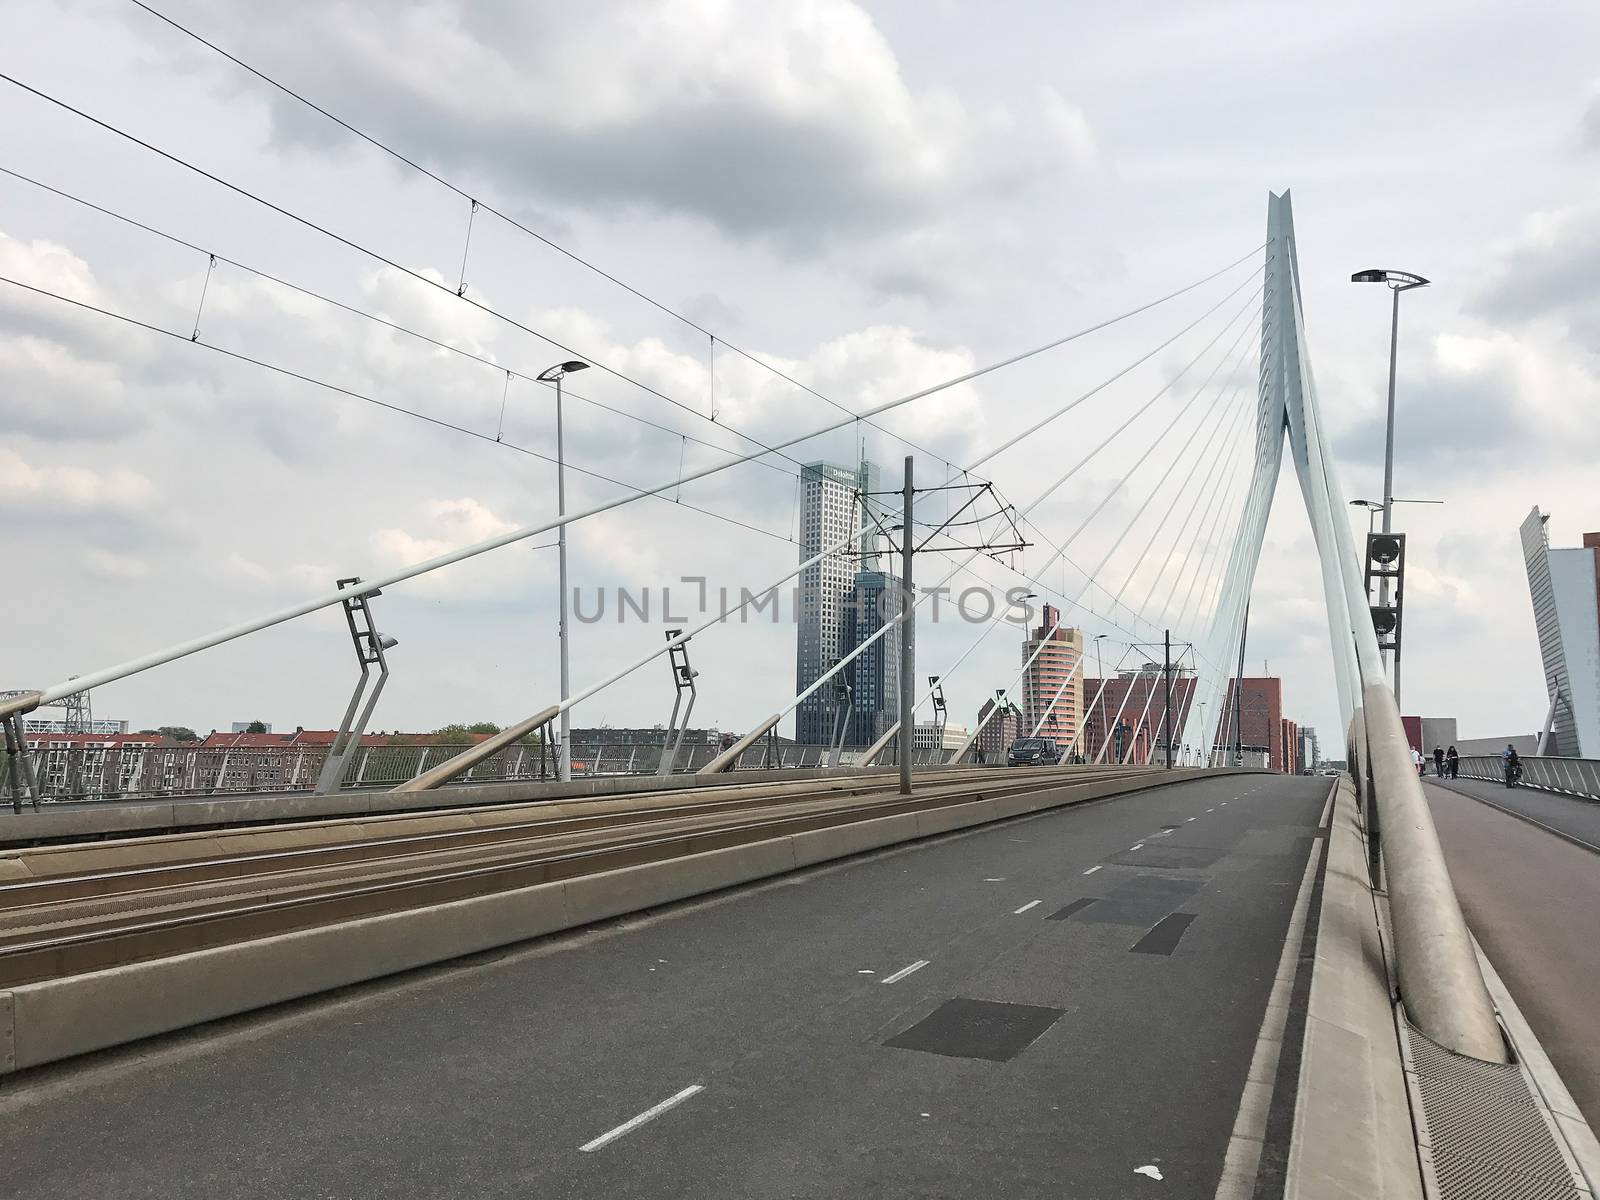 The Rotterdam Skyline by Kartouchken